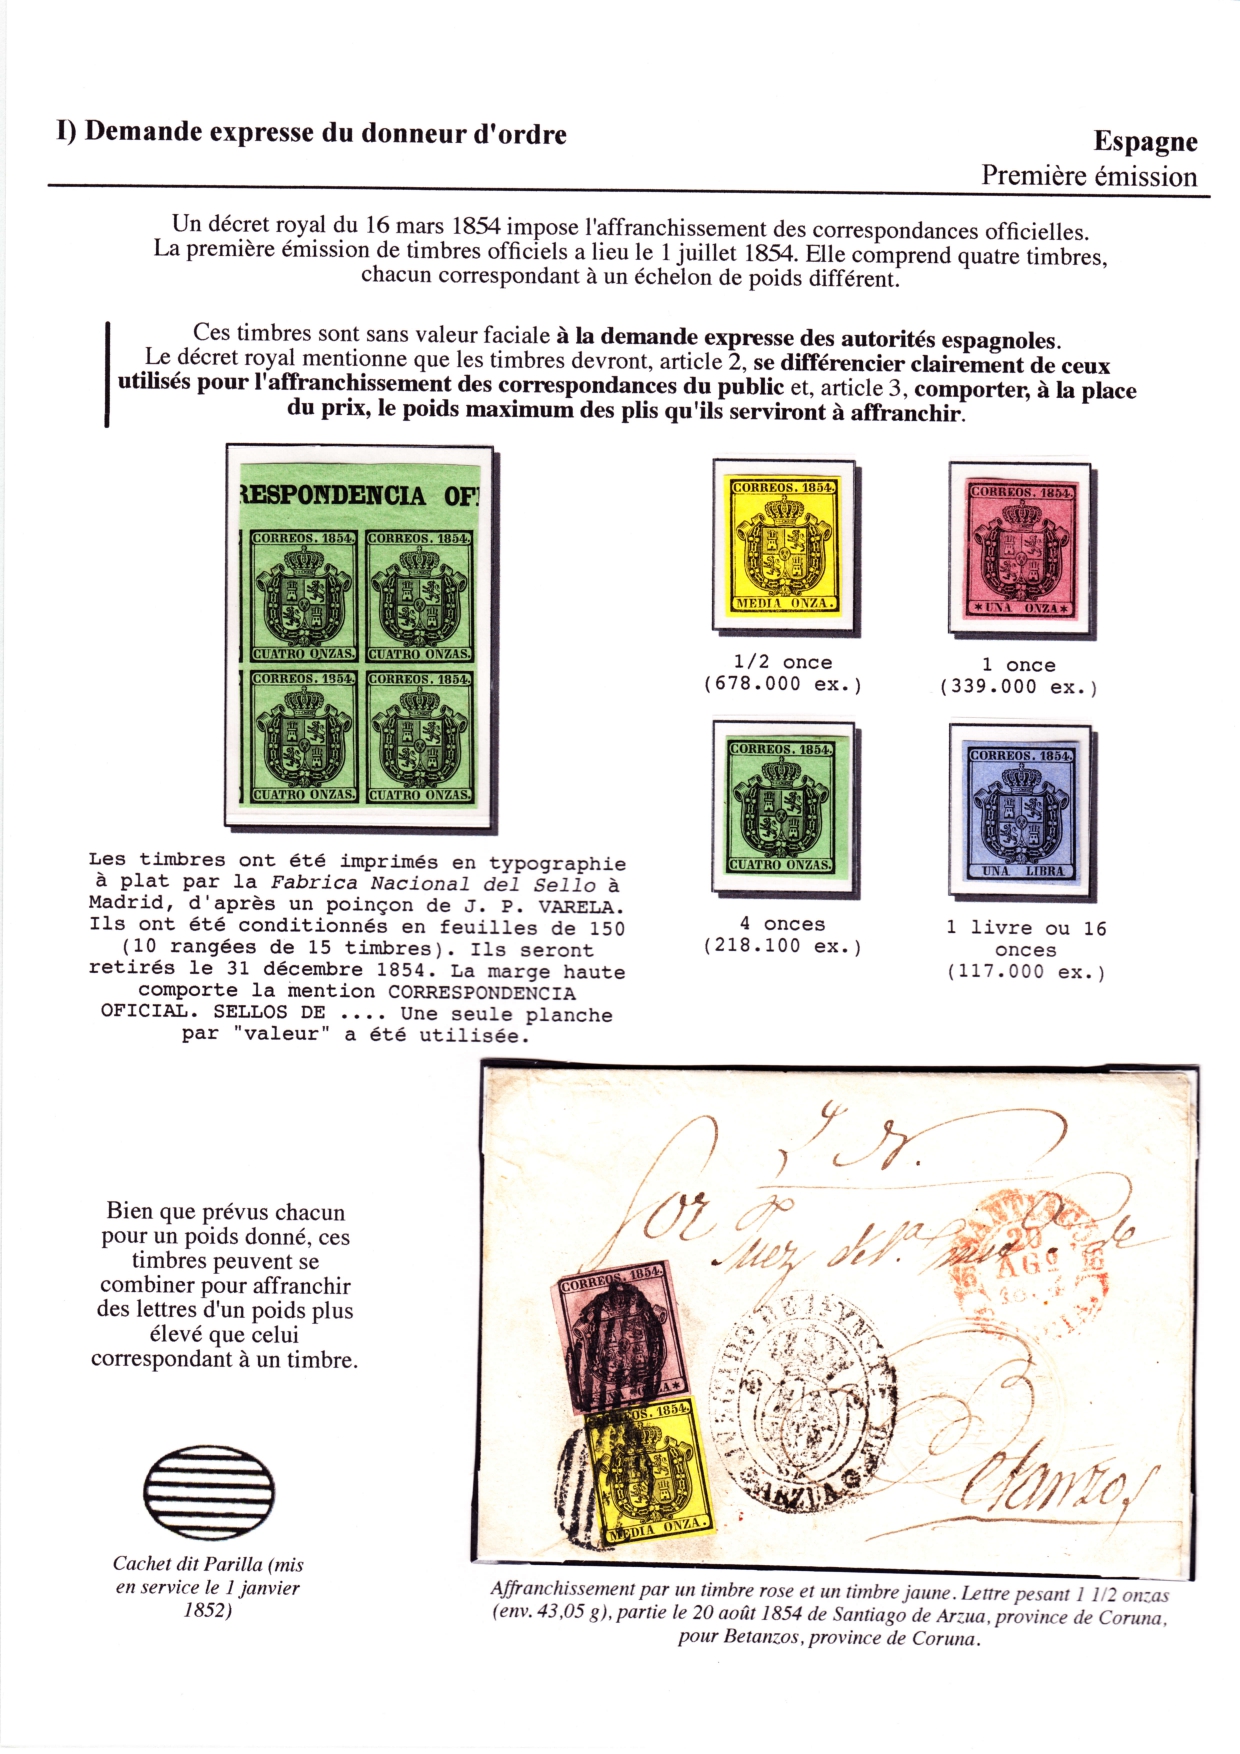 Les débuts des timbres sans valeur faciale apparente p. 2